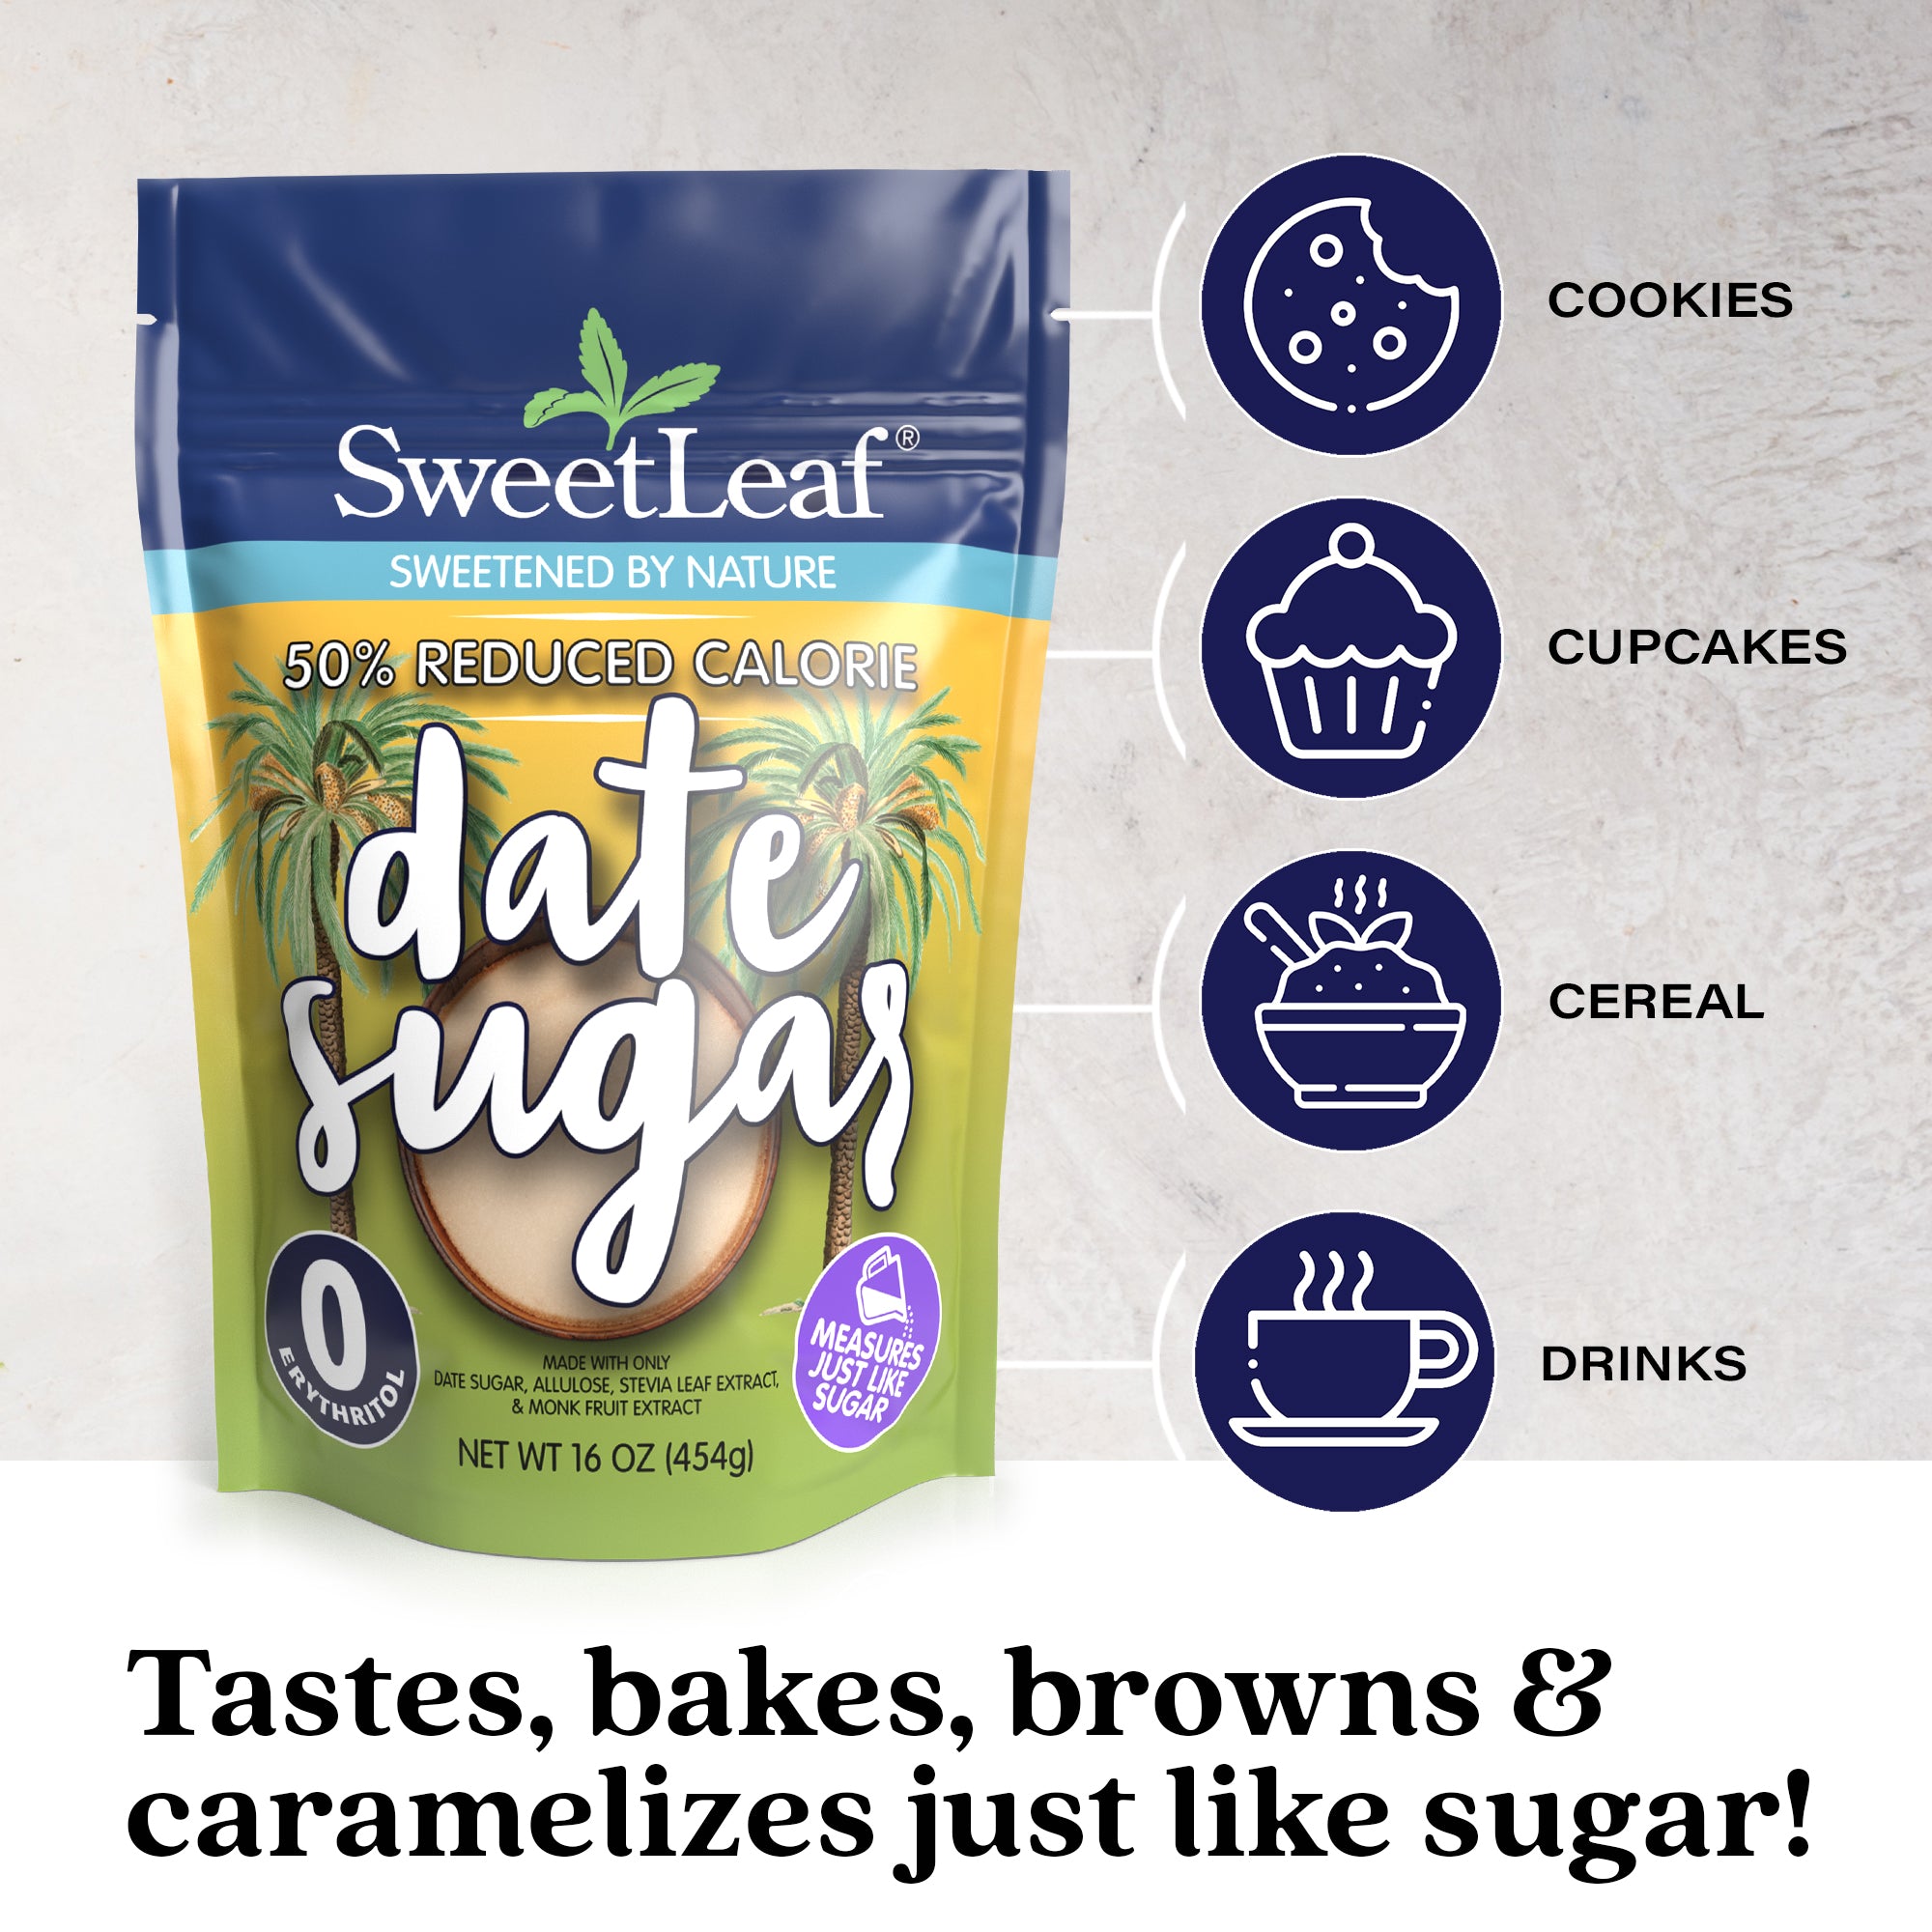 50% Reduced Calorie Date Sugar – SweetLeaf®